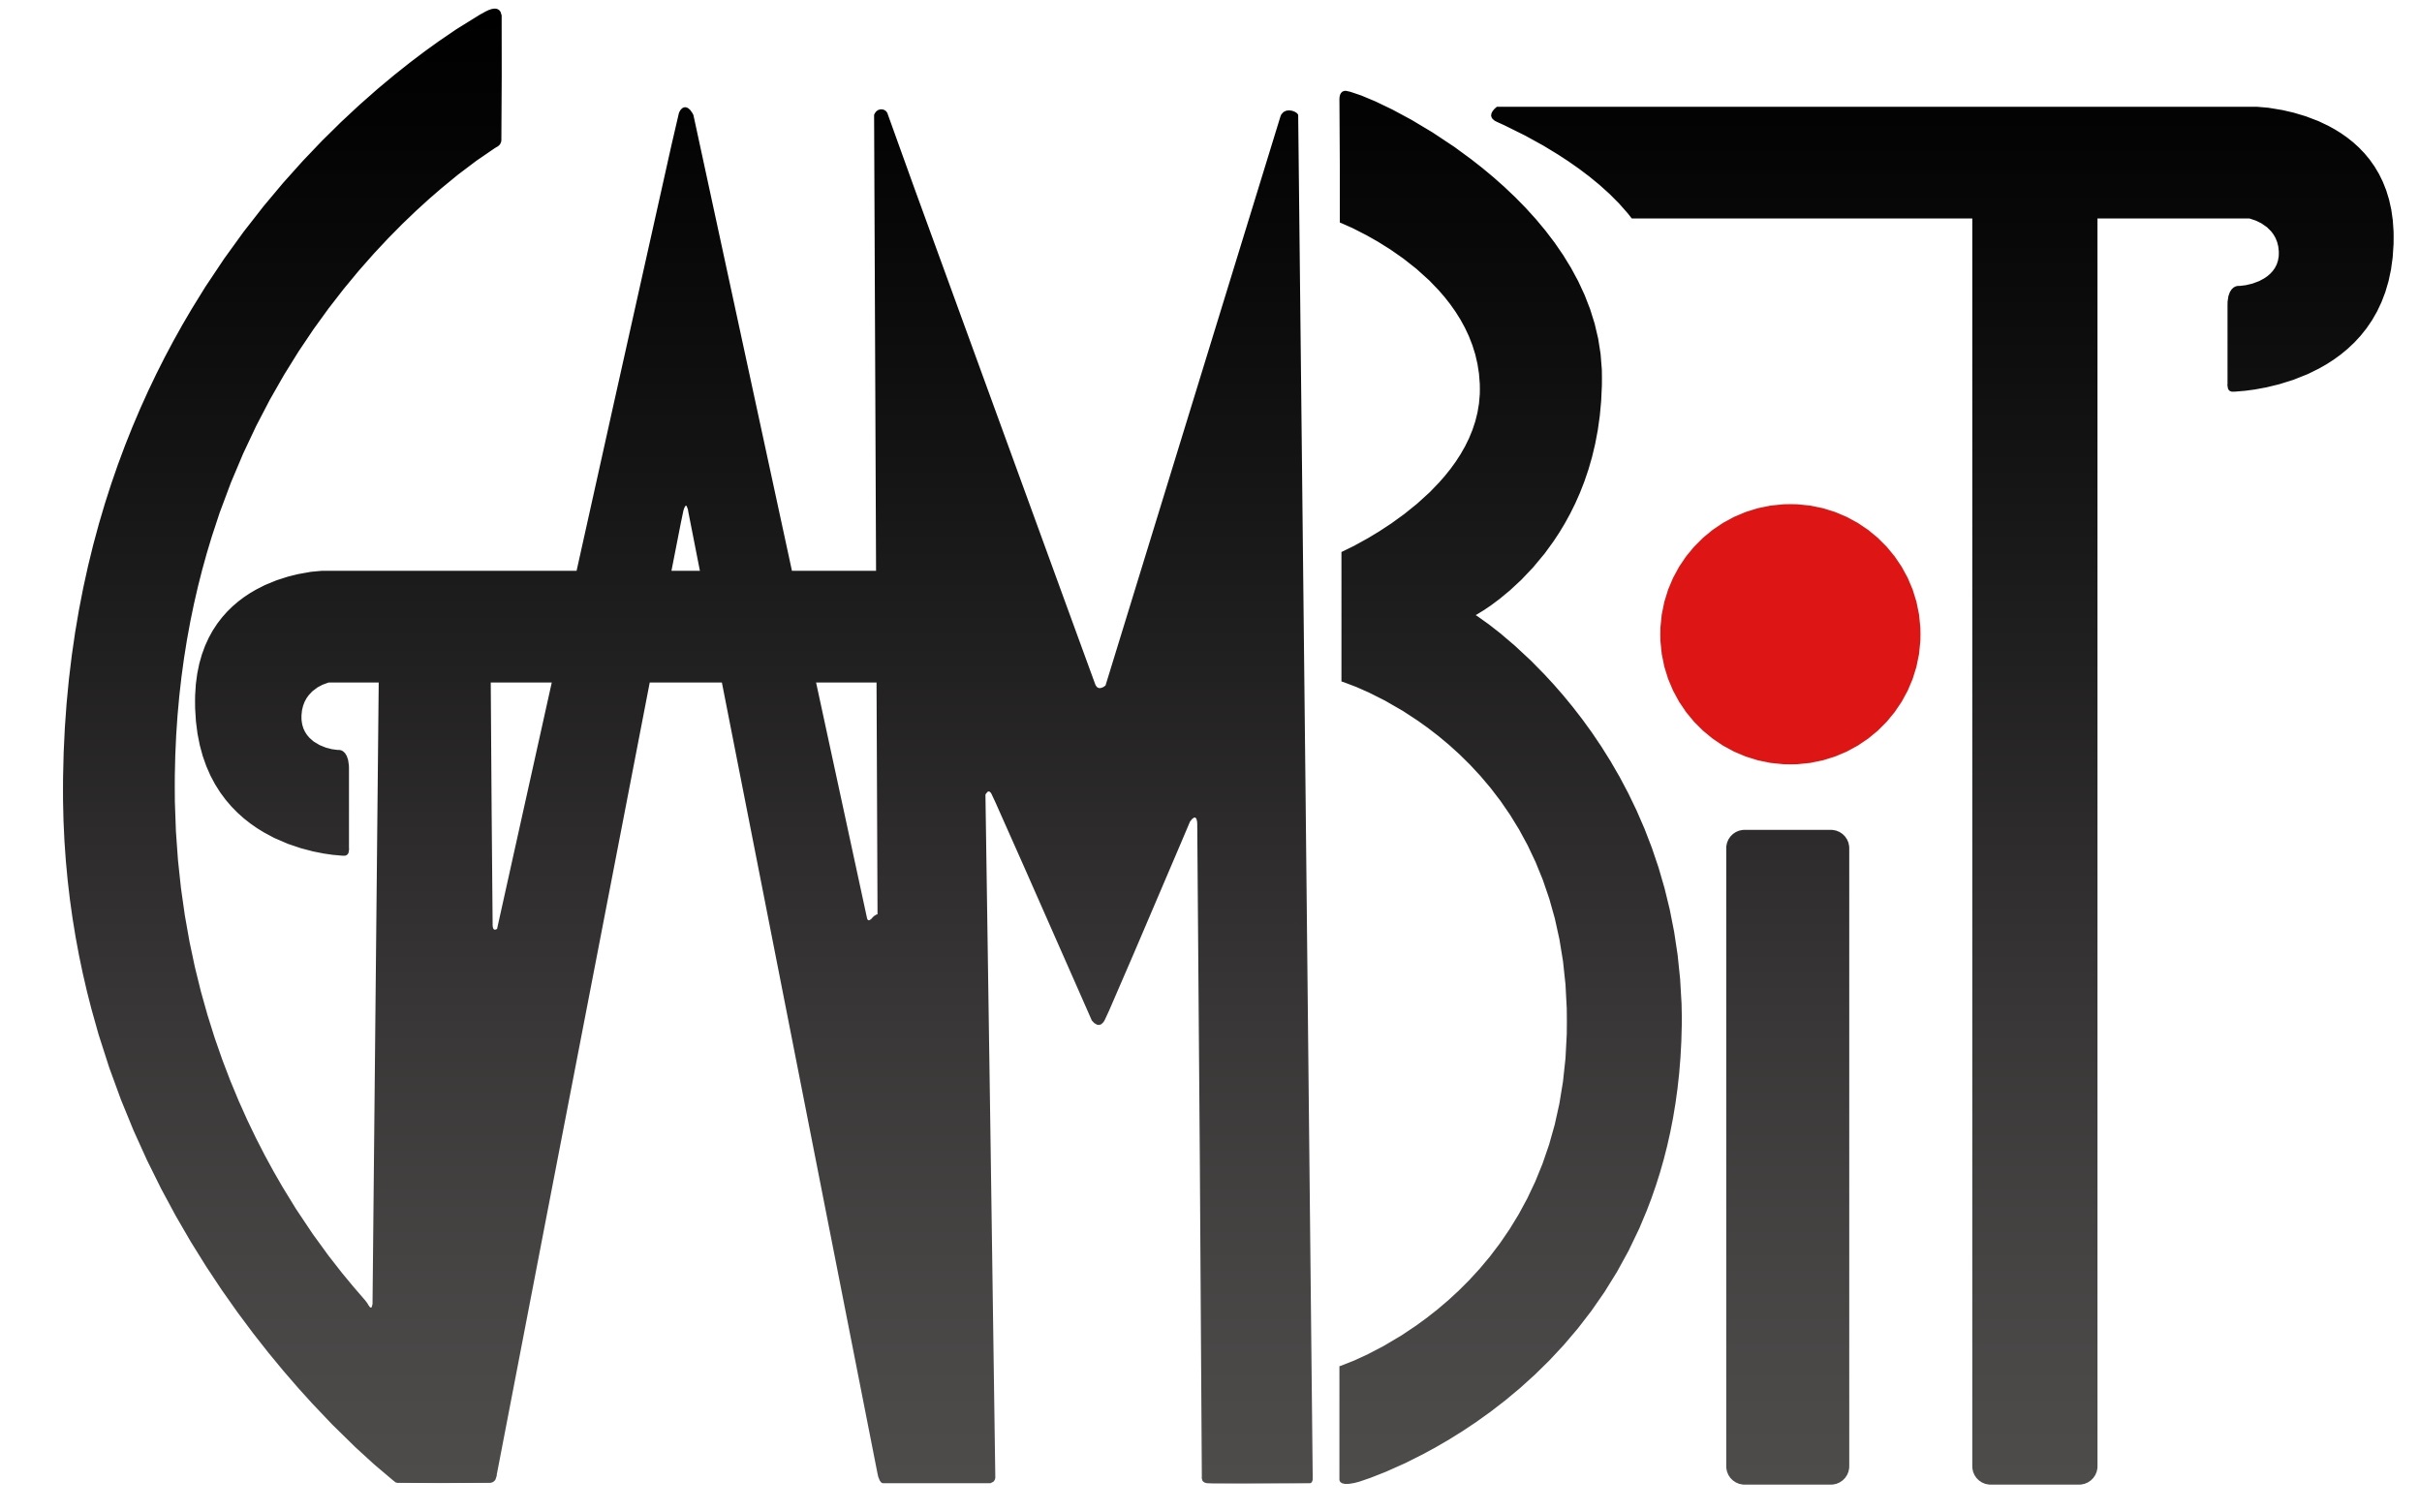 GAMBIT Logo.jpg 5a22c7e40edf41e106e1ce76a20c8643